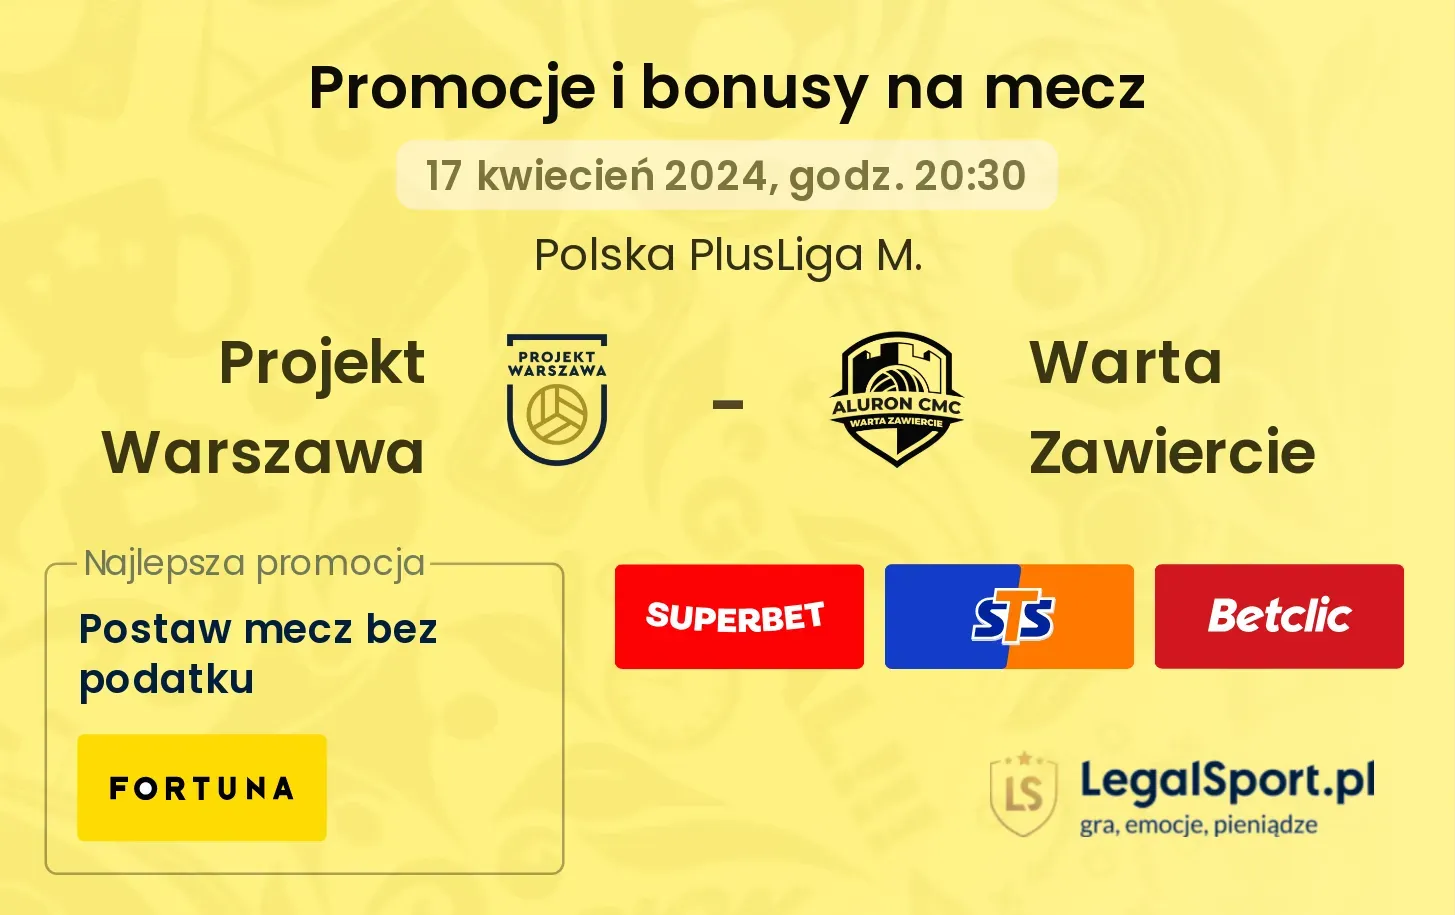 Projekt Warszawa - Warta Zawiercie promocje bonusy na mecz